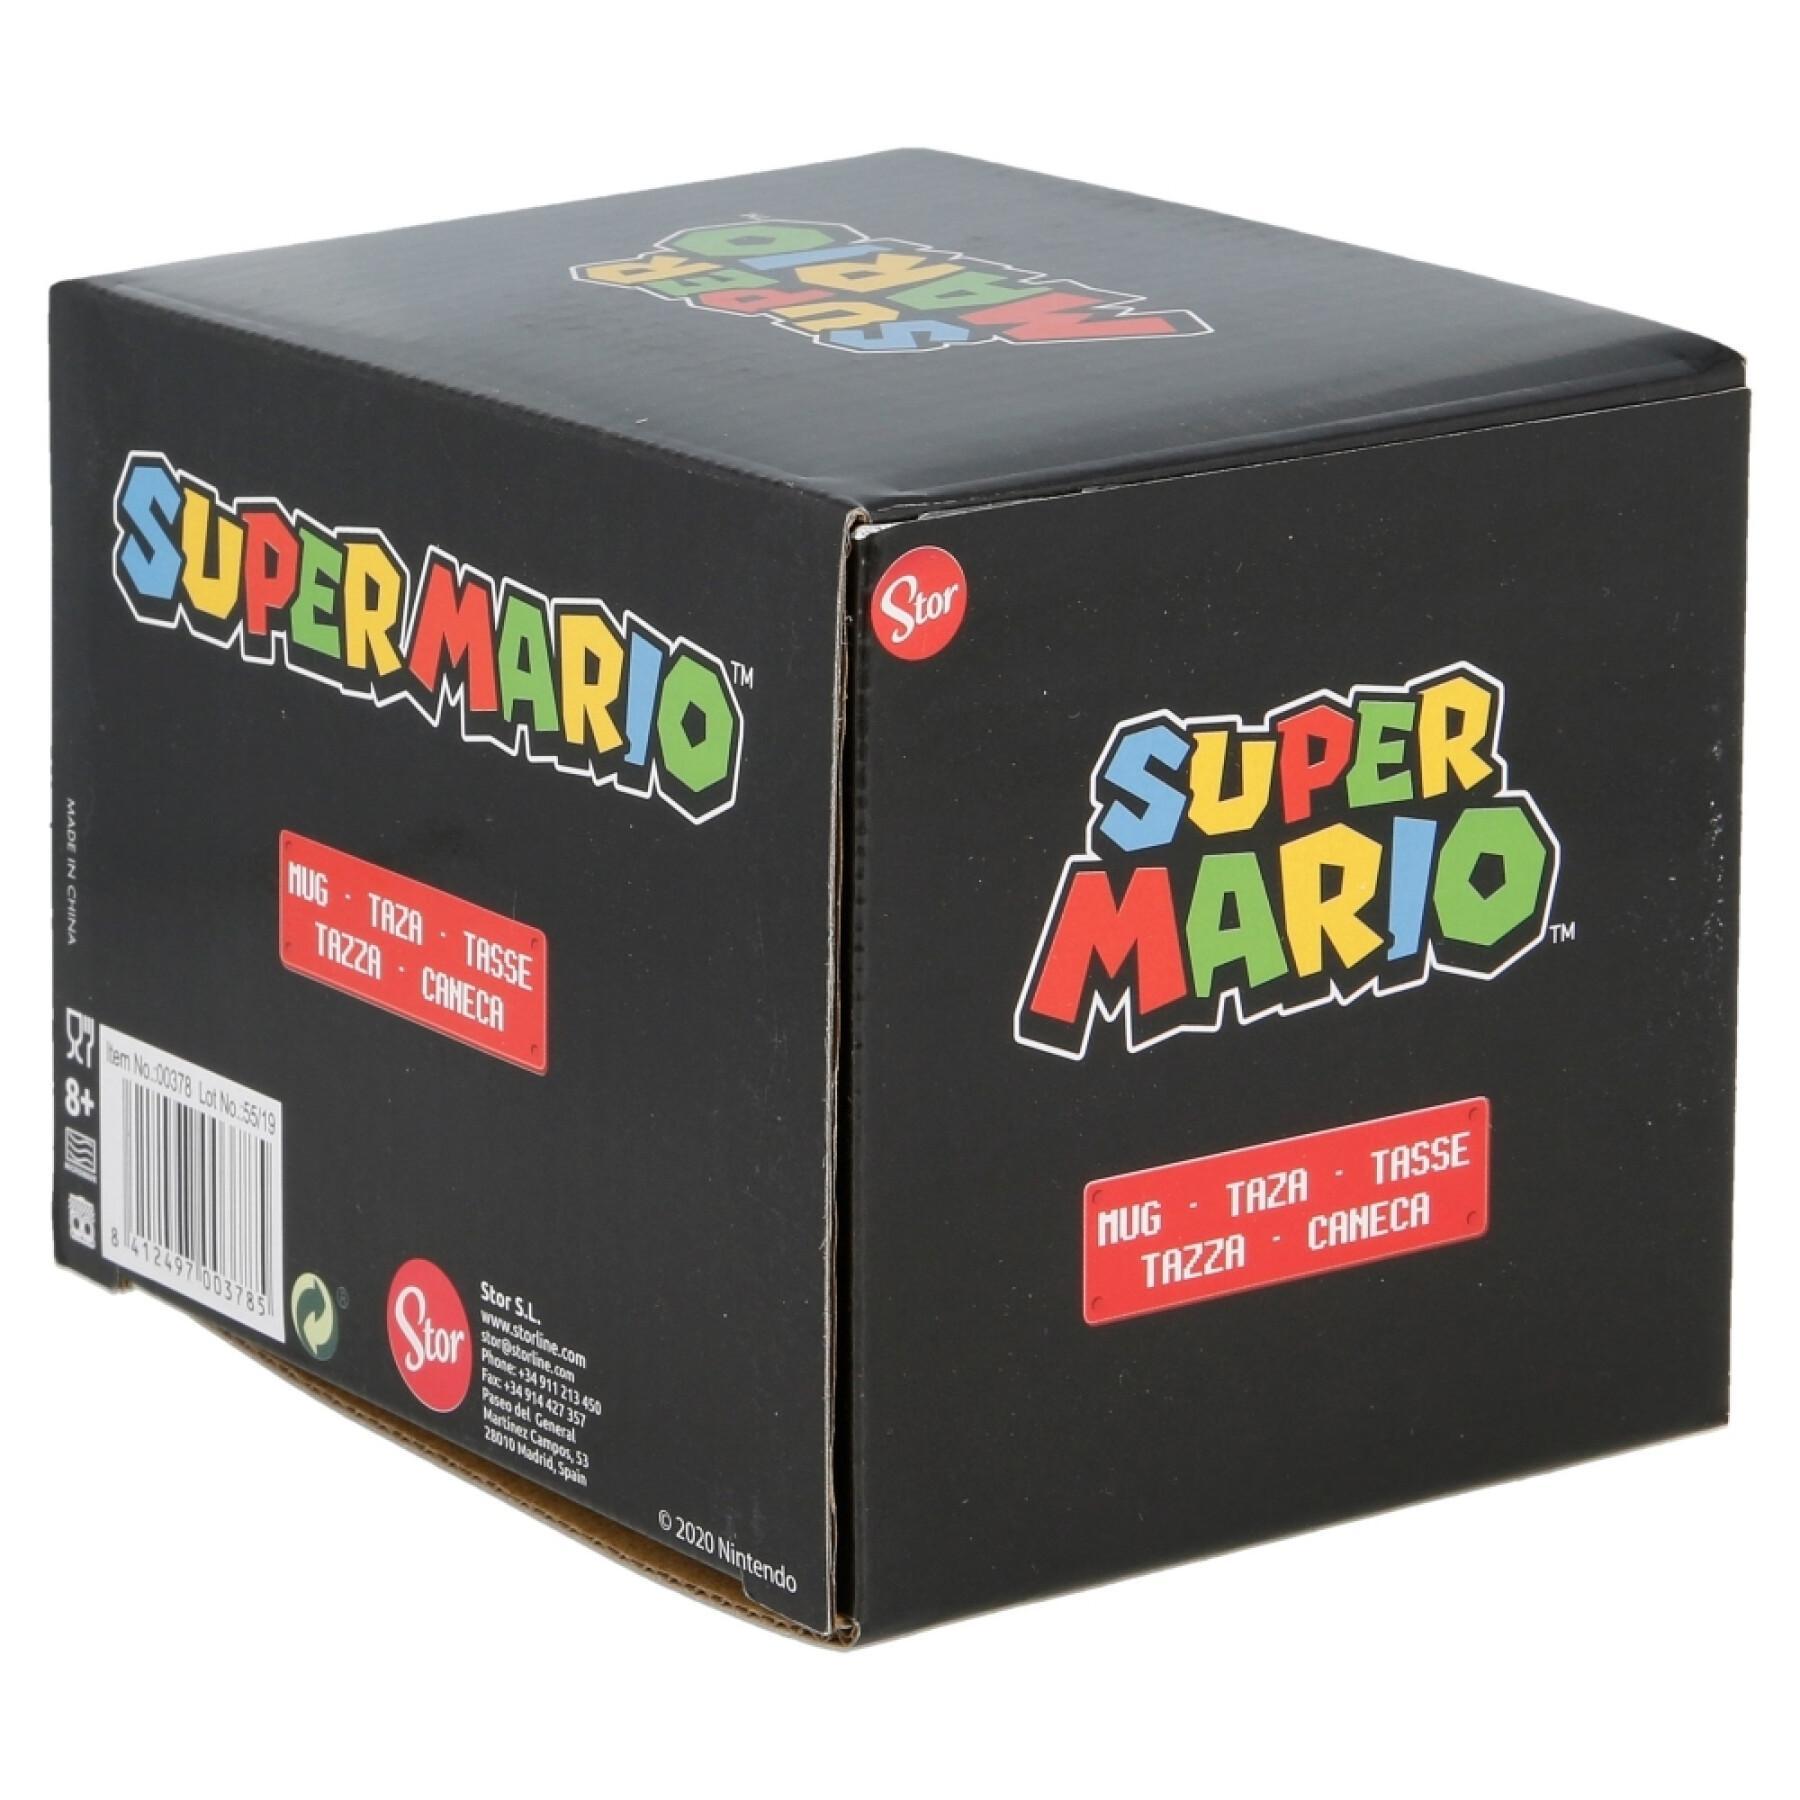 Keramische mok geschenkverpakking Super Mario